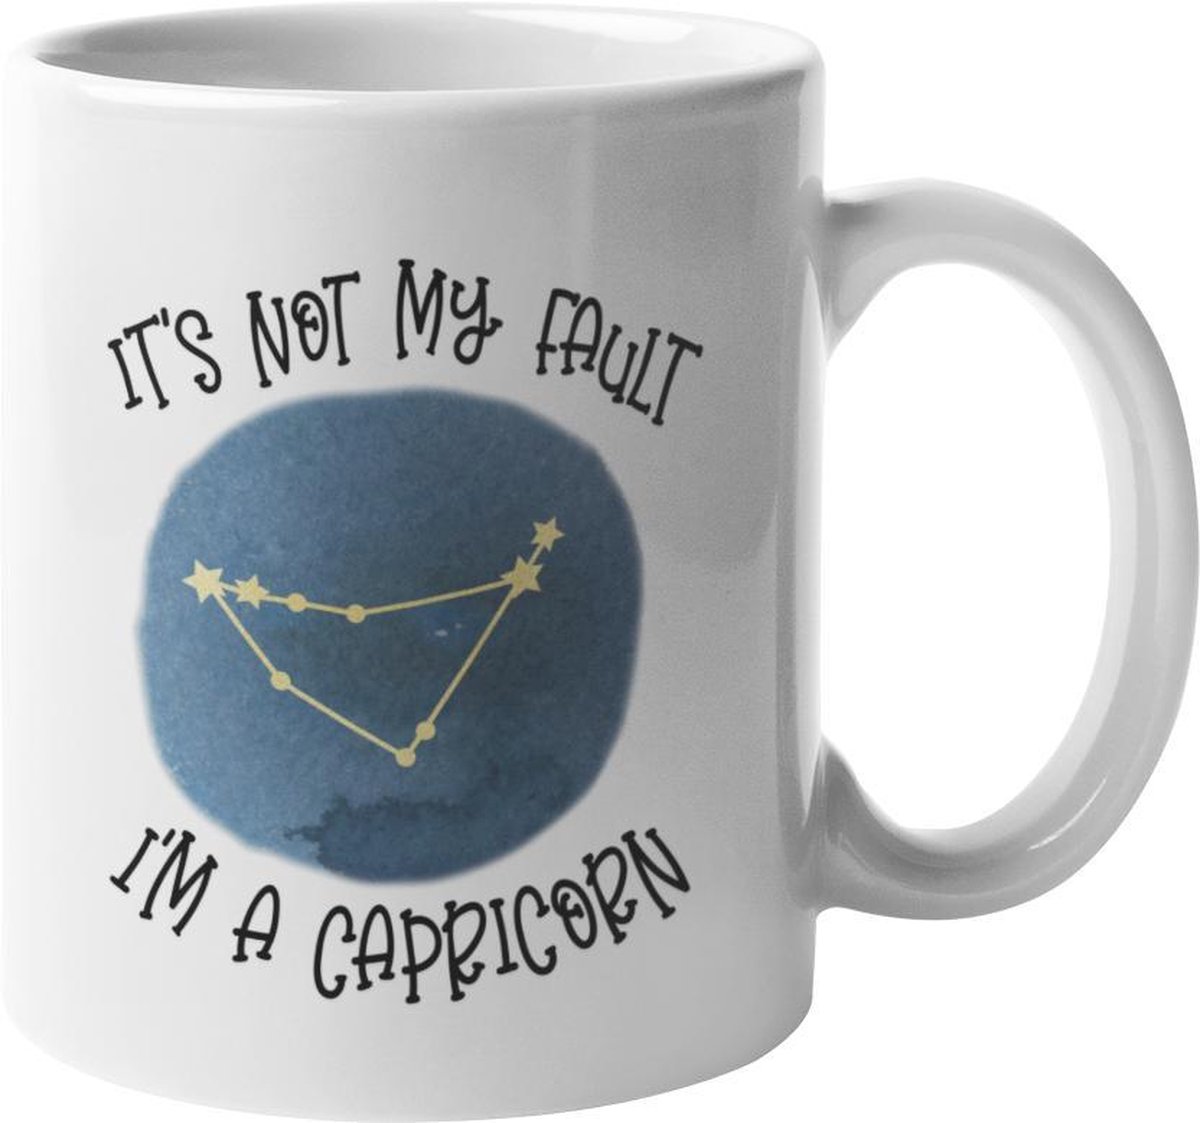 Mok Capricorn Is niet mijn schuld Beker voor sterrenbeeld Steenbok, cadeau voor haar, hem, collega, vriend, vriendin, horoscoop